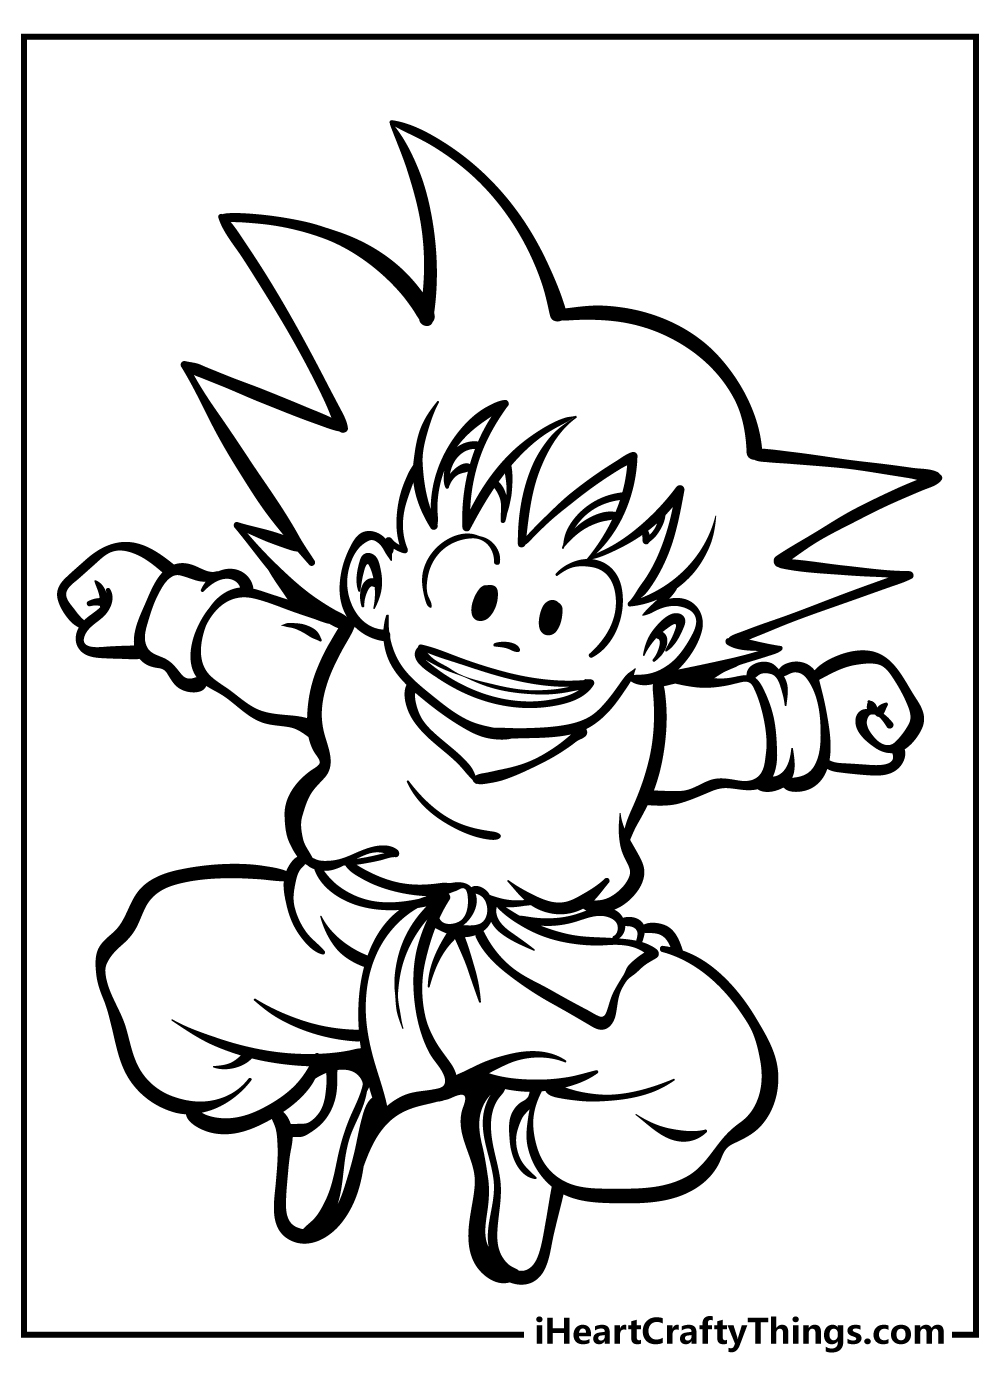 Goku Coloring Book for kids free printable